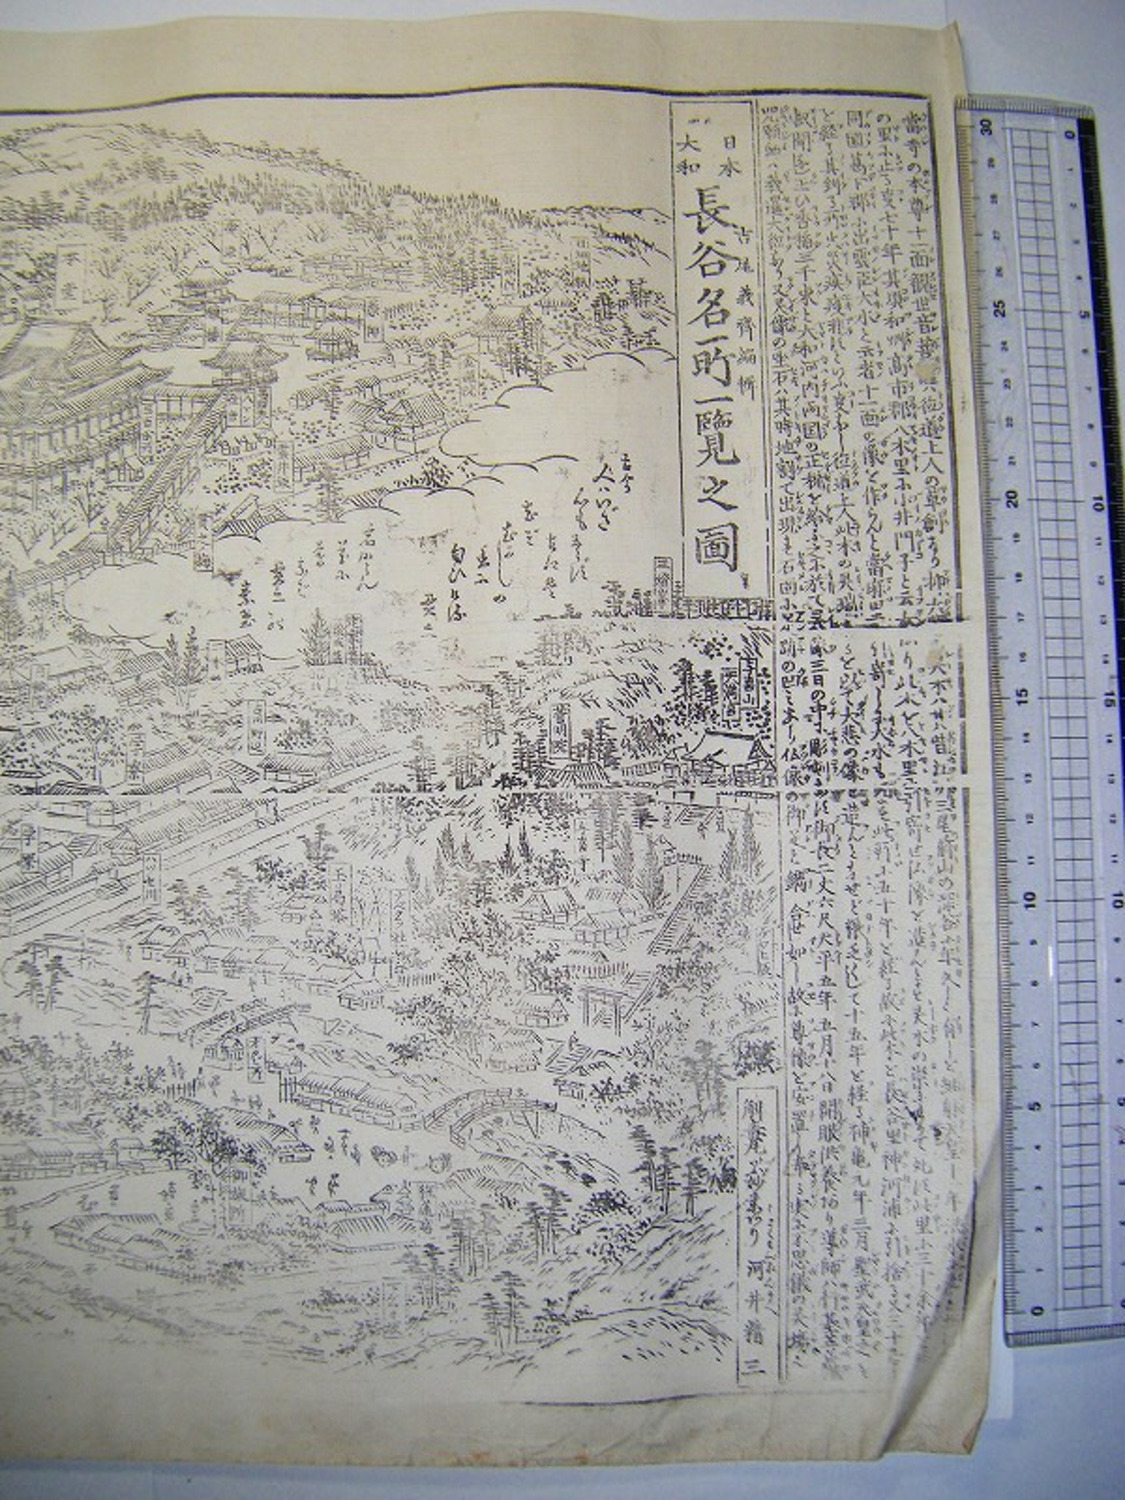 明治 初期 浮世絵 絵図 鳥瞰図 地図 半山 奈良「日本 大和 長谷 名所 一覧之図」木版画 ukiyoe